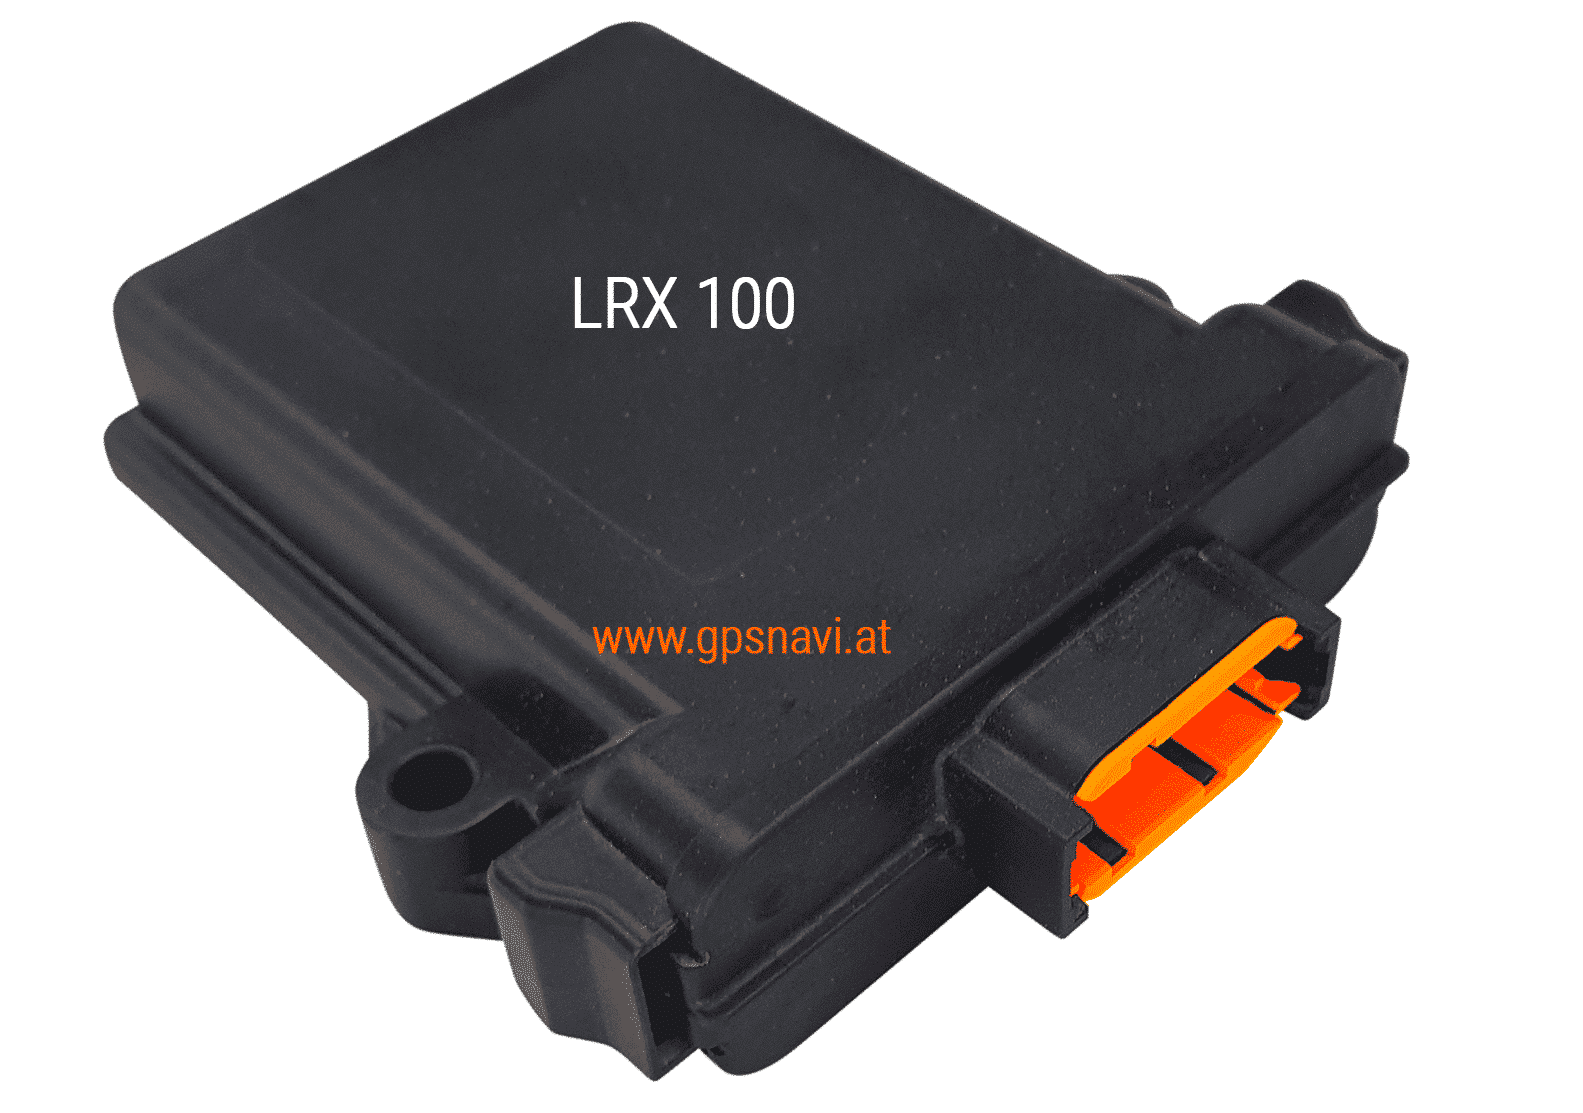 LRX-100 WEBFLEET TPMS-Empfängermodul von Bridgestone Mobility Solutions